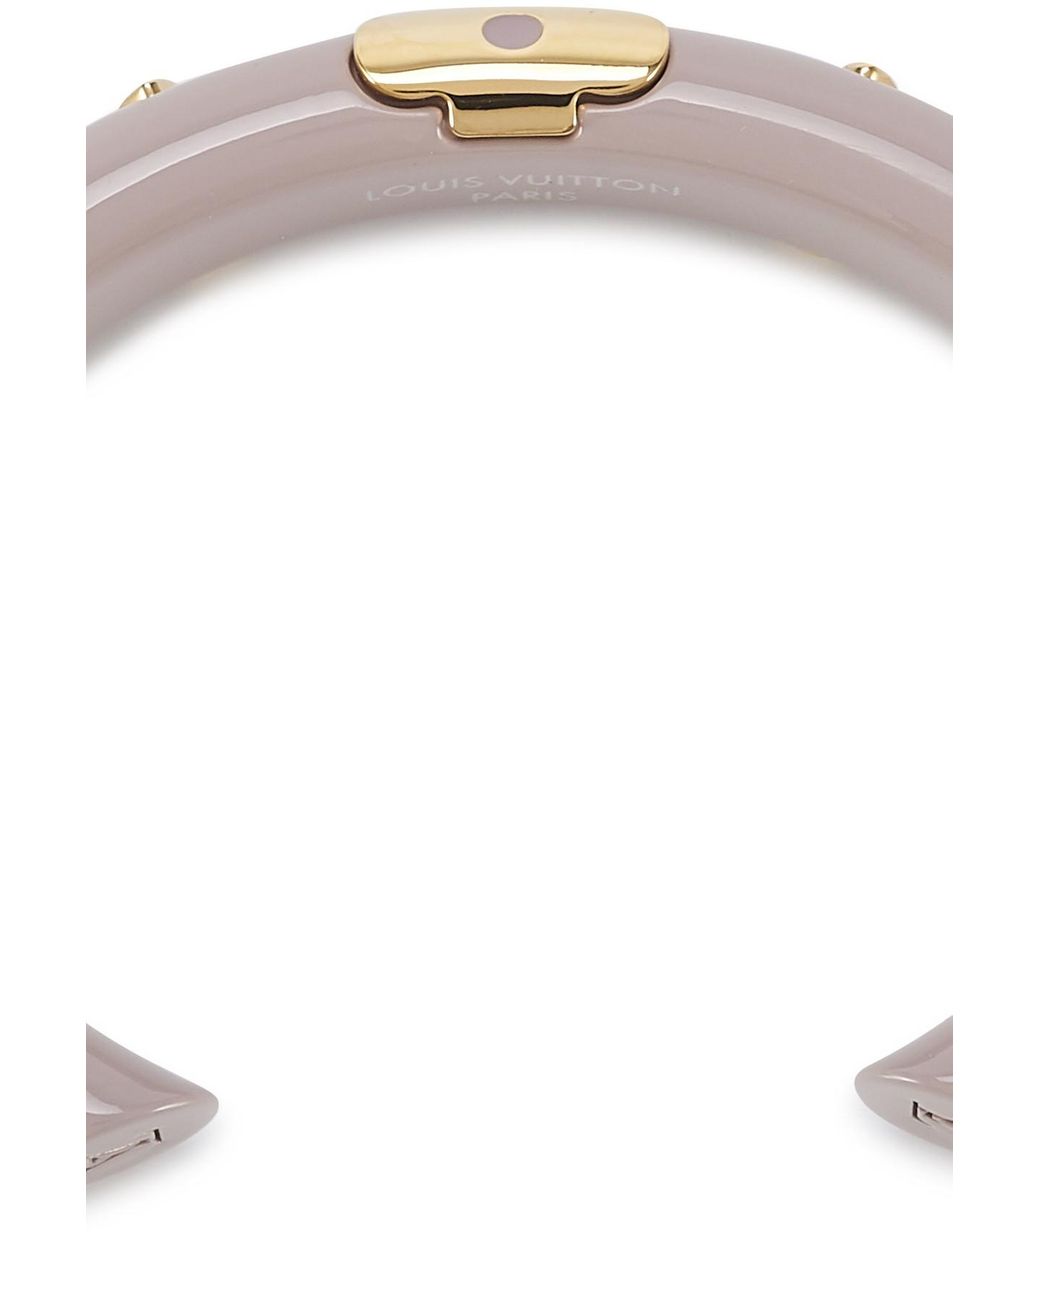 Authentic Louis Vuitton Jonk Daily Monogram Bracelet Rose Gold & Silver  M64407